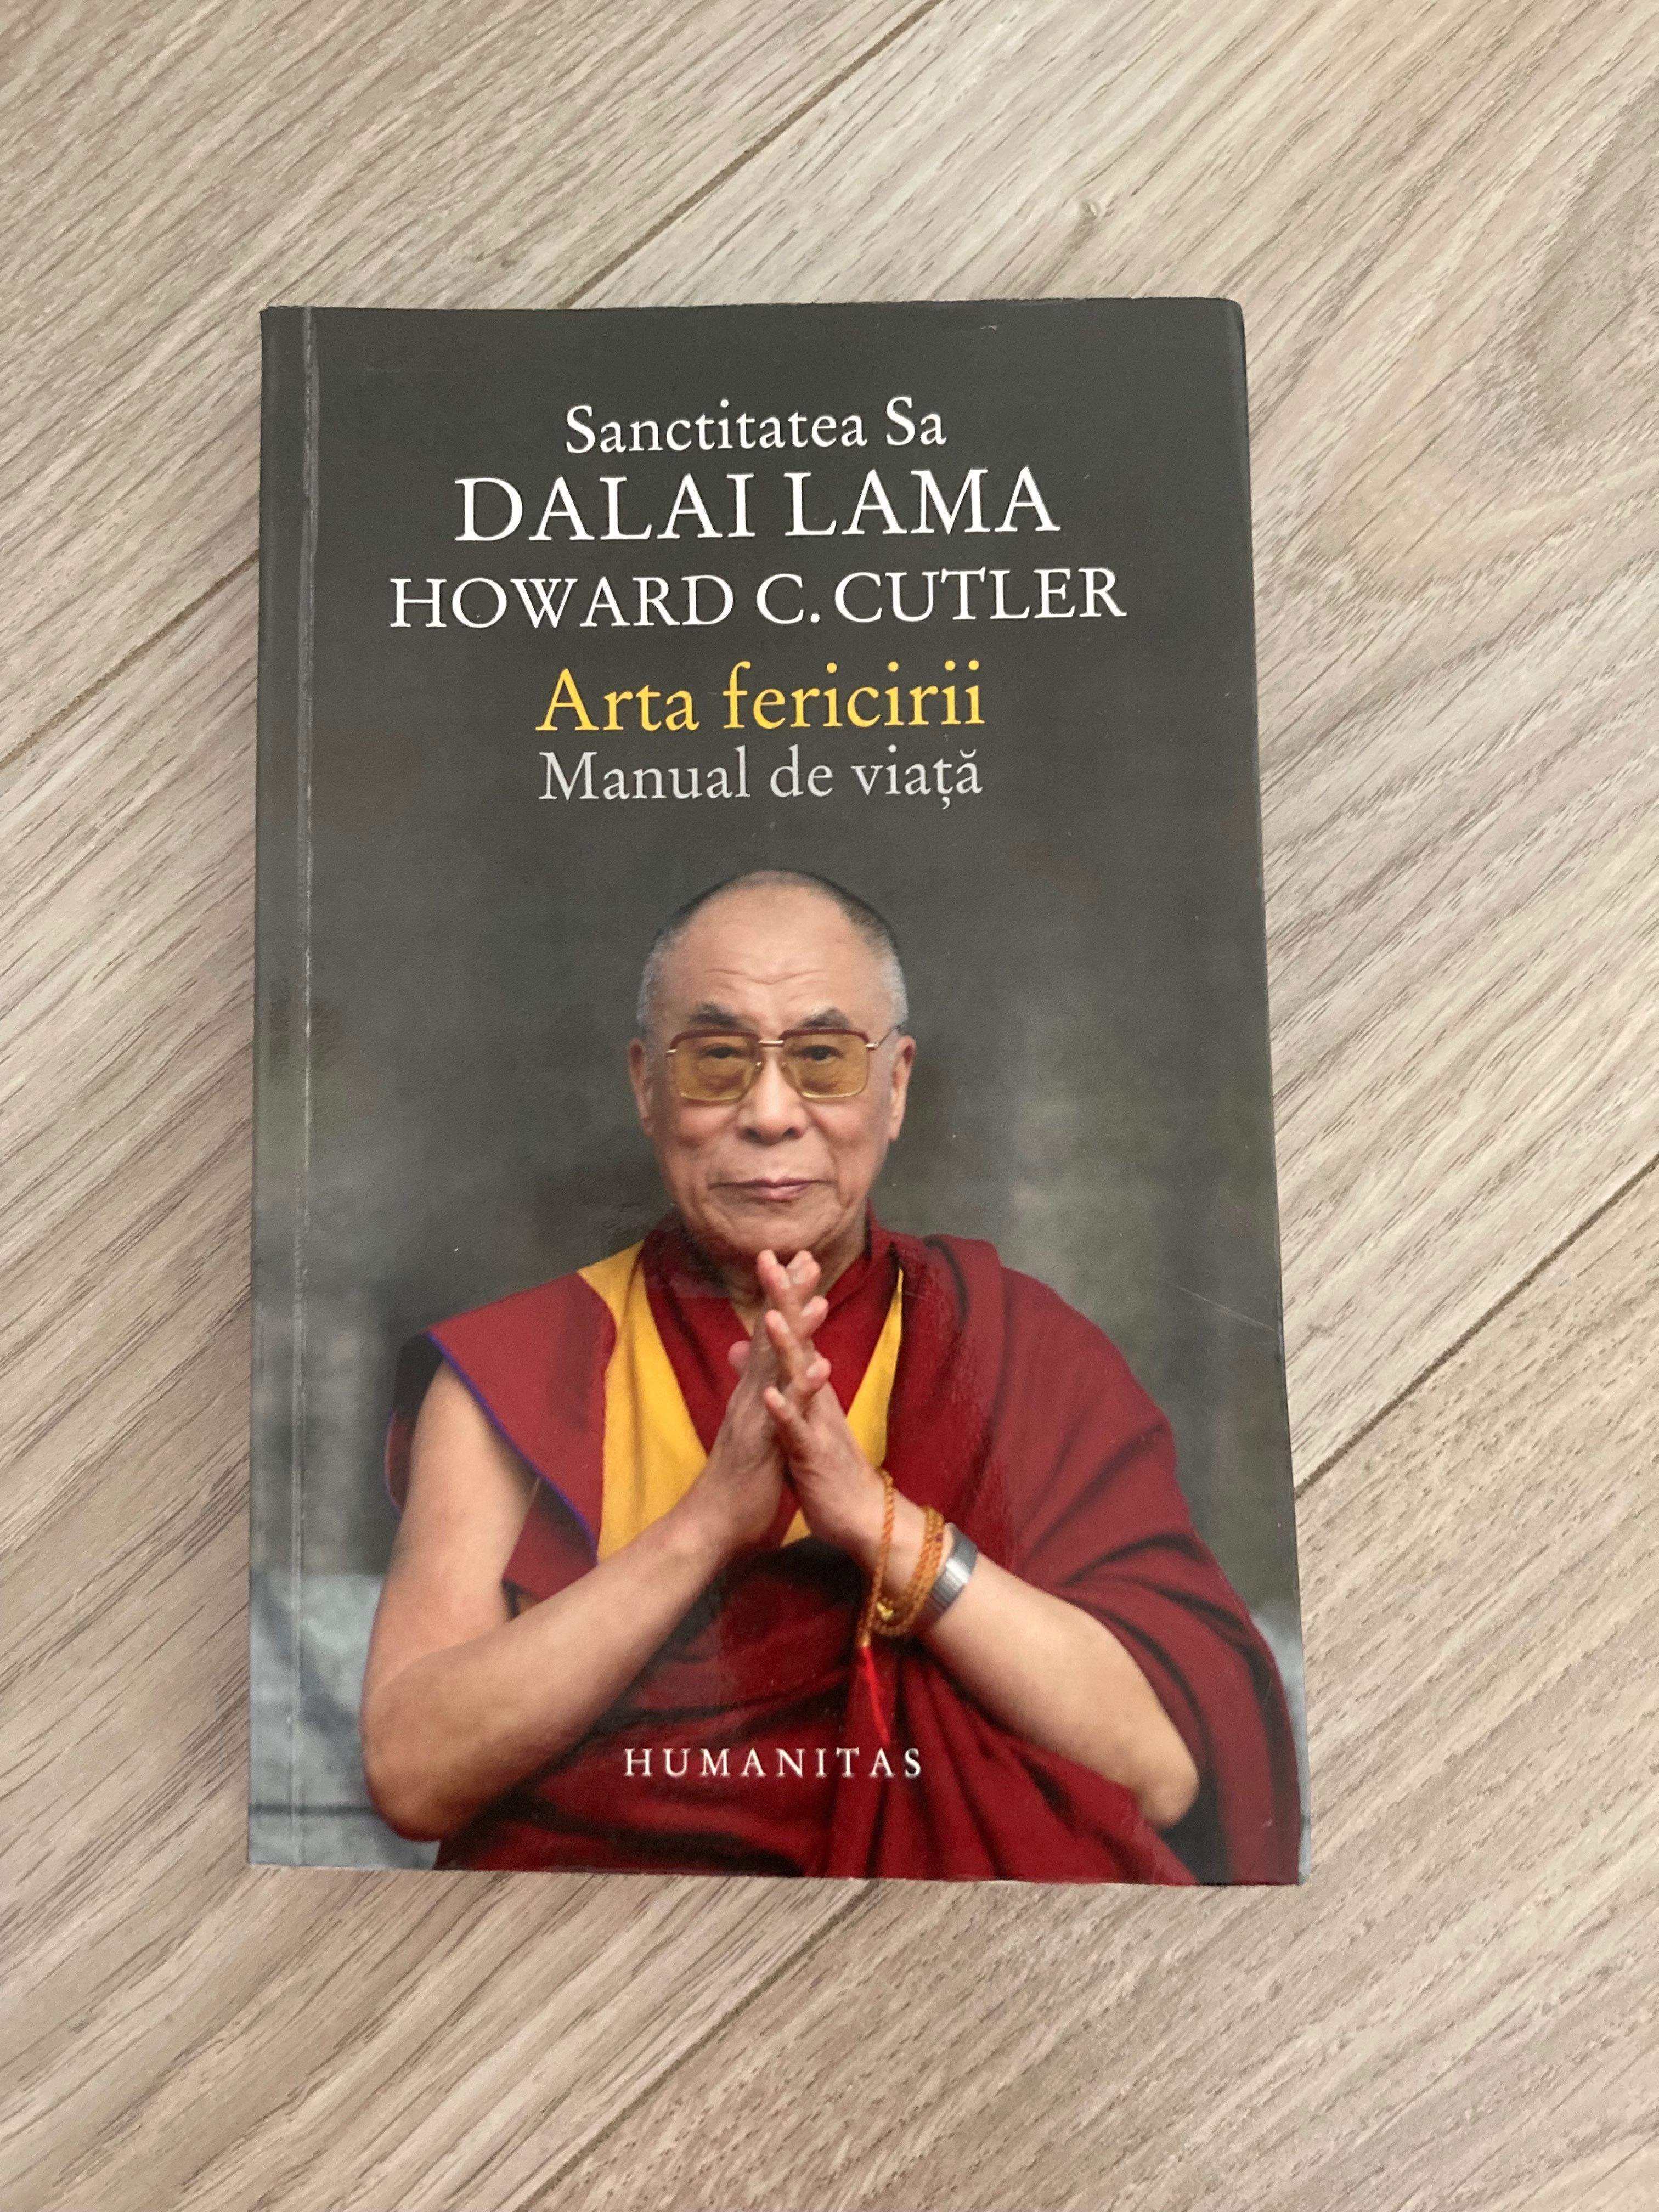 Dalai Lama - Arta fericirii